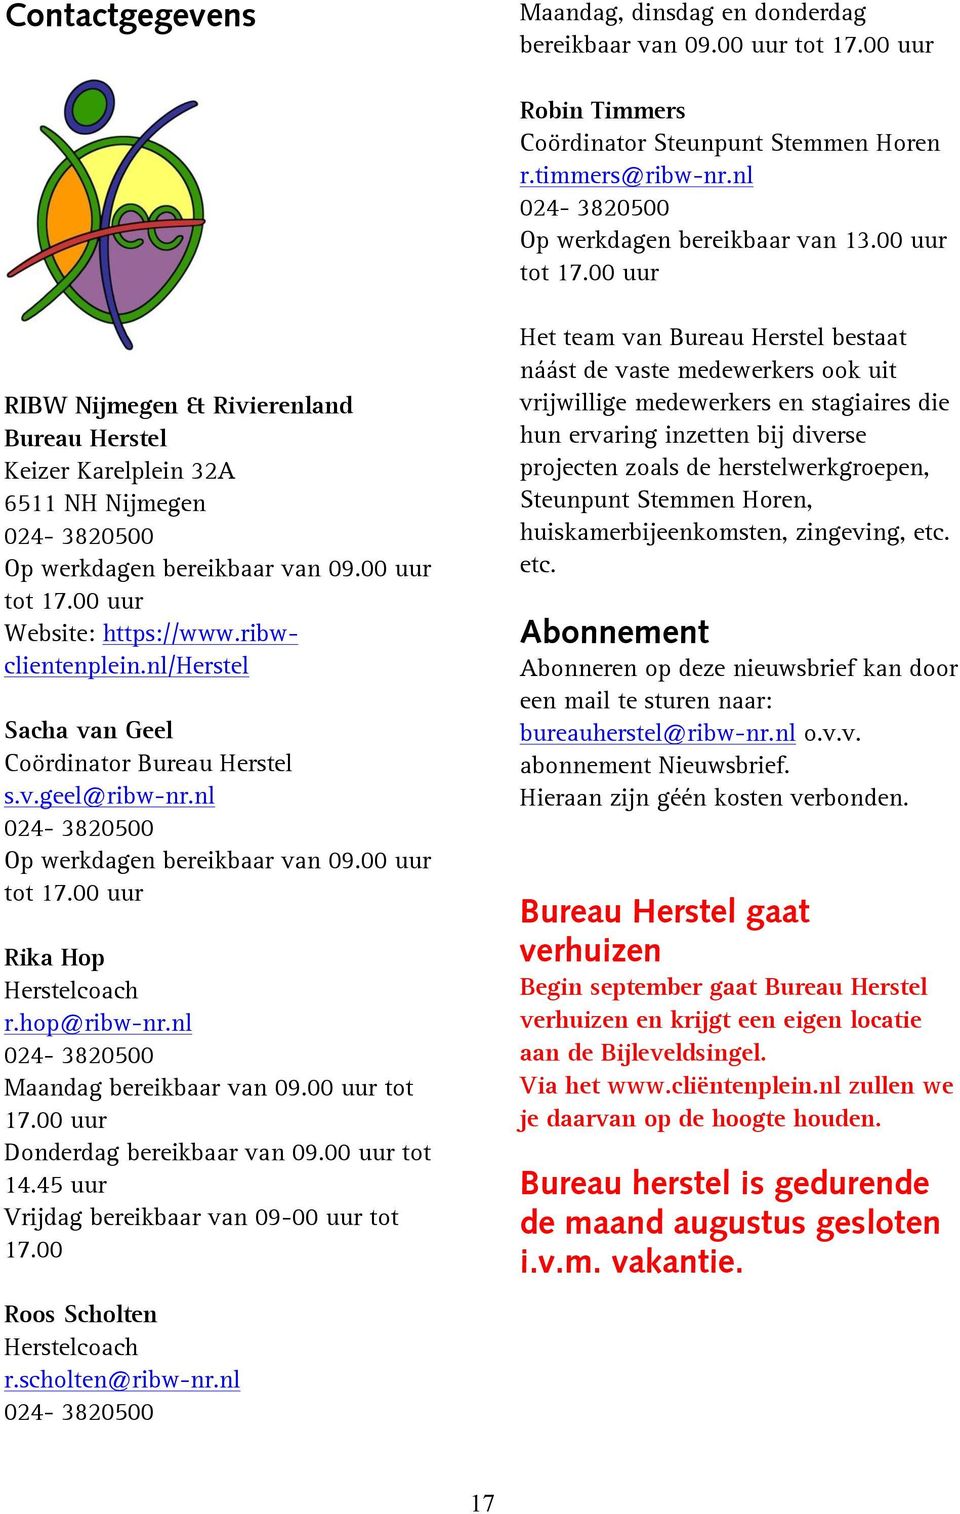 ribwclientenplein.nl/herstel Sacha van Geel Coördinator Bureau Herstel s.v.geel@ribw-nr.nl 024-3820500 Op werkdagen bereikbaar van 09.00 uur tot 17.00 uur Rika Hop Herstelcoach r.hop@ribw-nr.